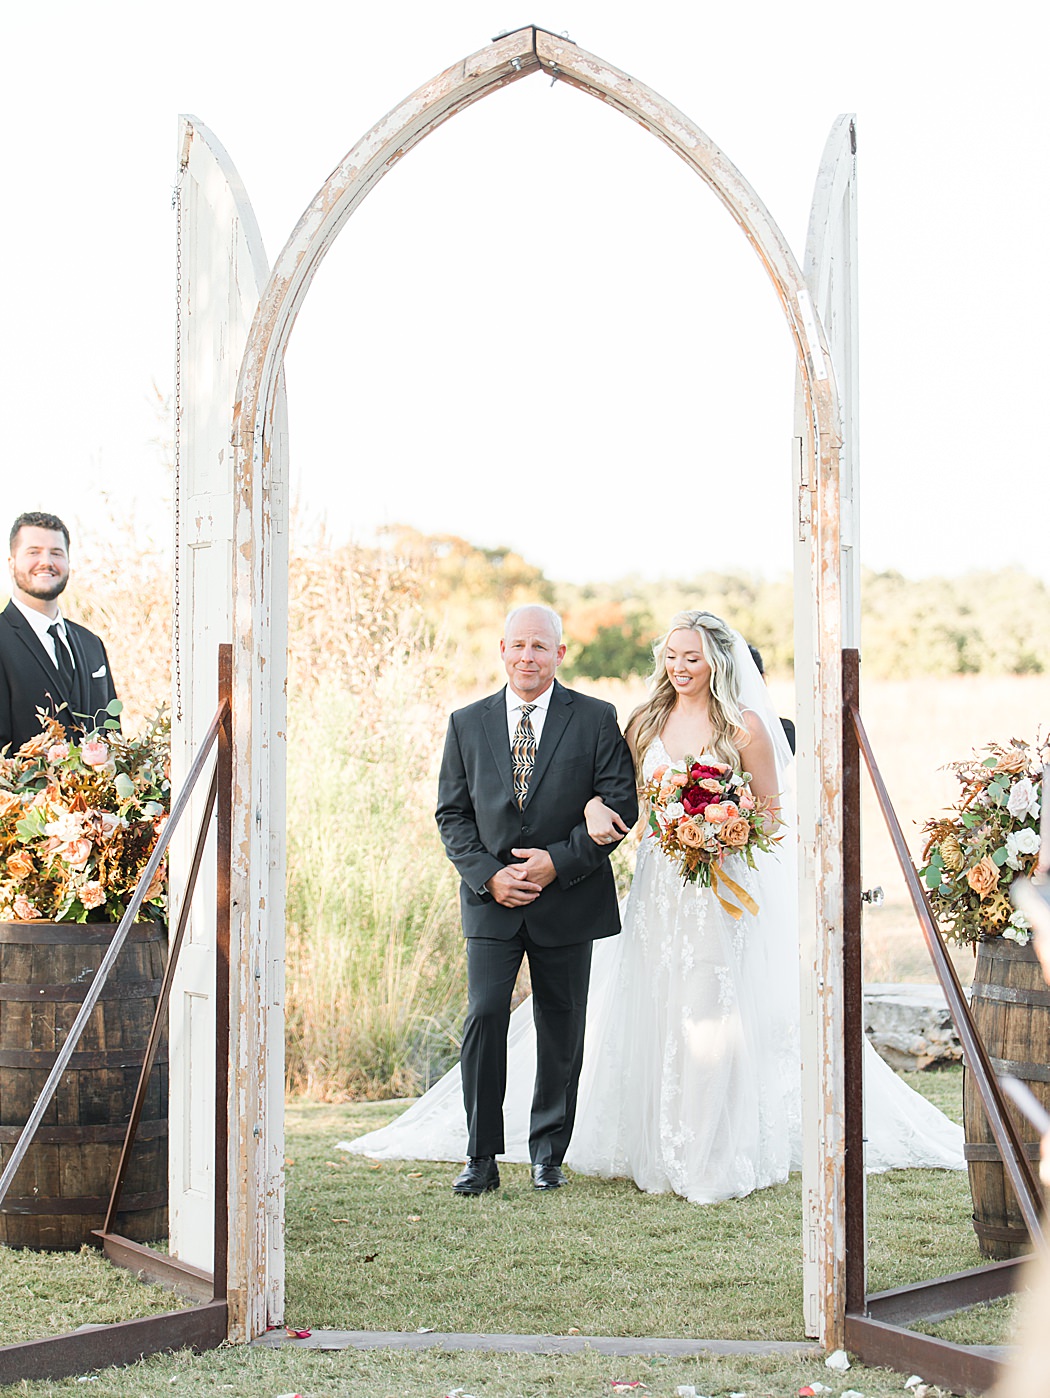 A Grey and Peach Fall Wedding at Contigo Ranch in Fredericksburg Texas by Allison Jeffers Photography 00029